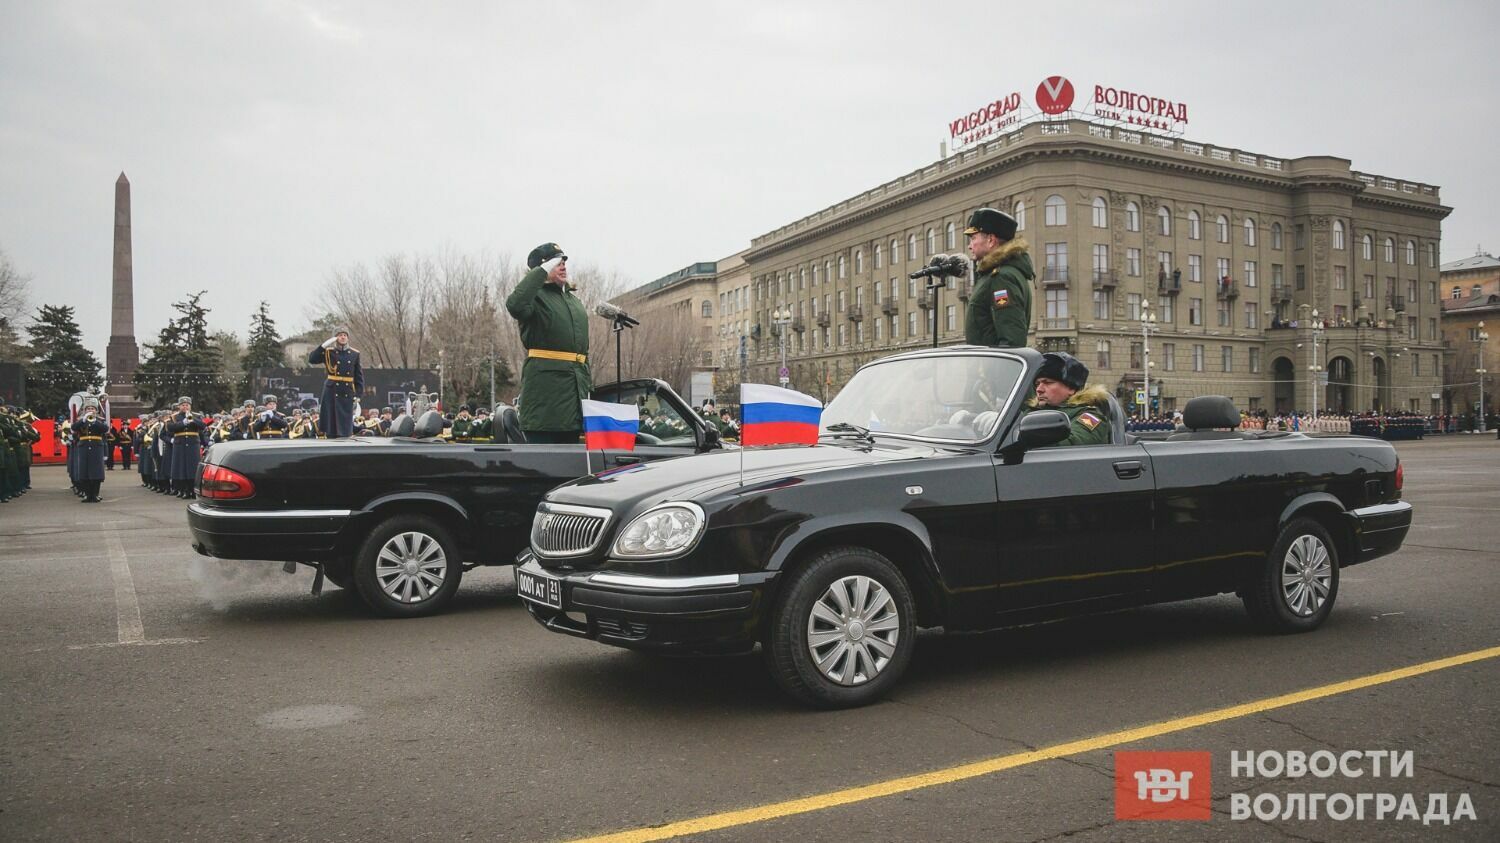 Евгений Иванов и Алексей Авдеев объехали парадные расчеты, поочередно поздравляя военнослужащих с Победой